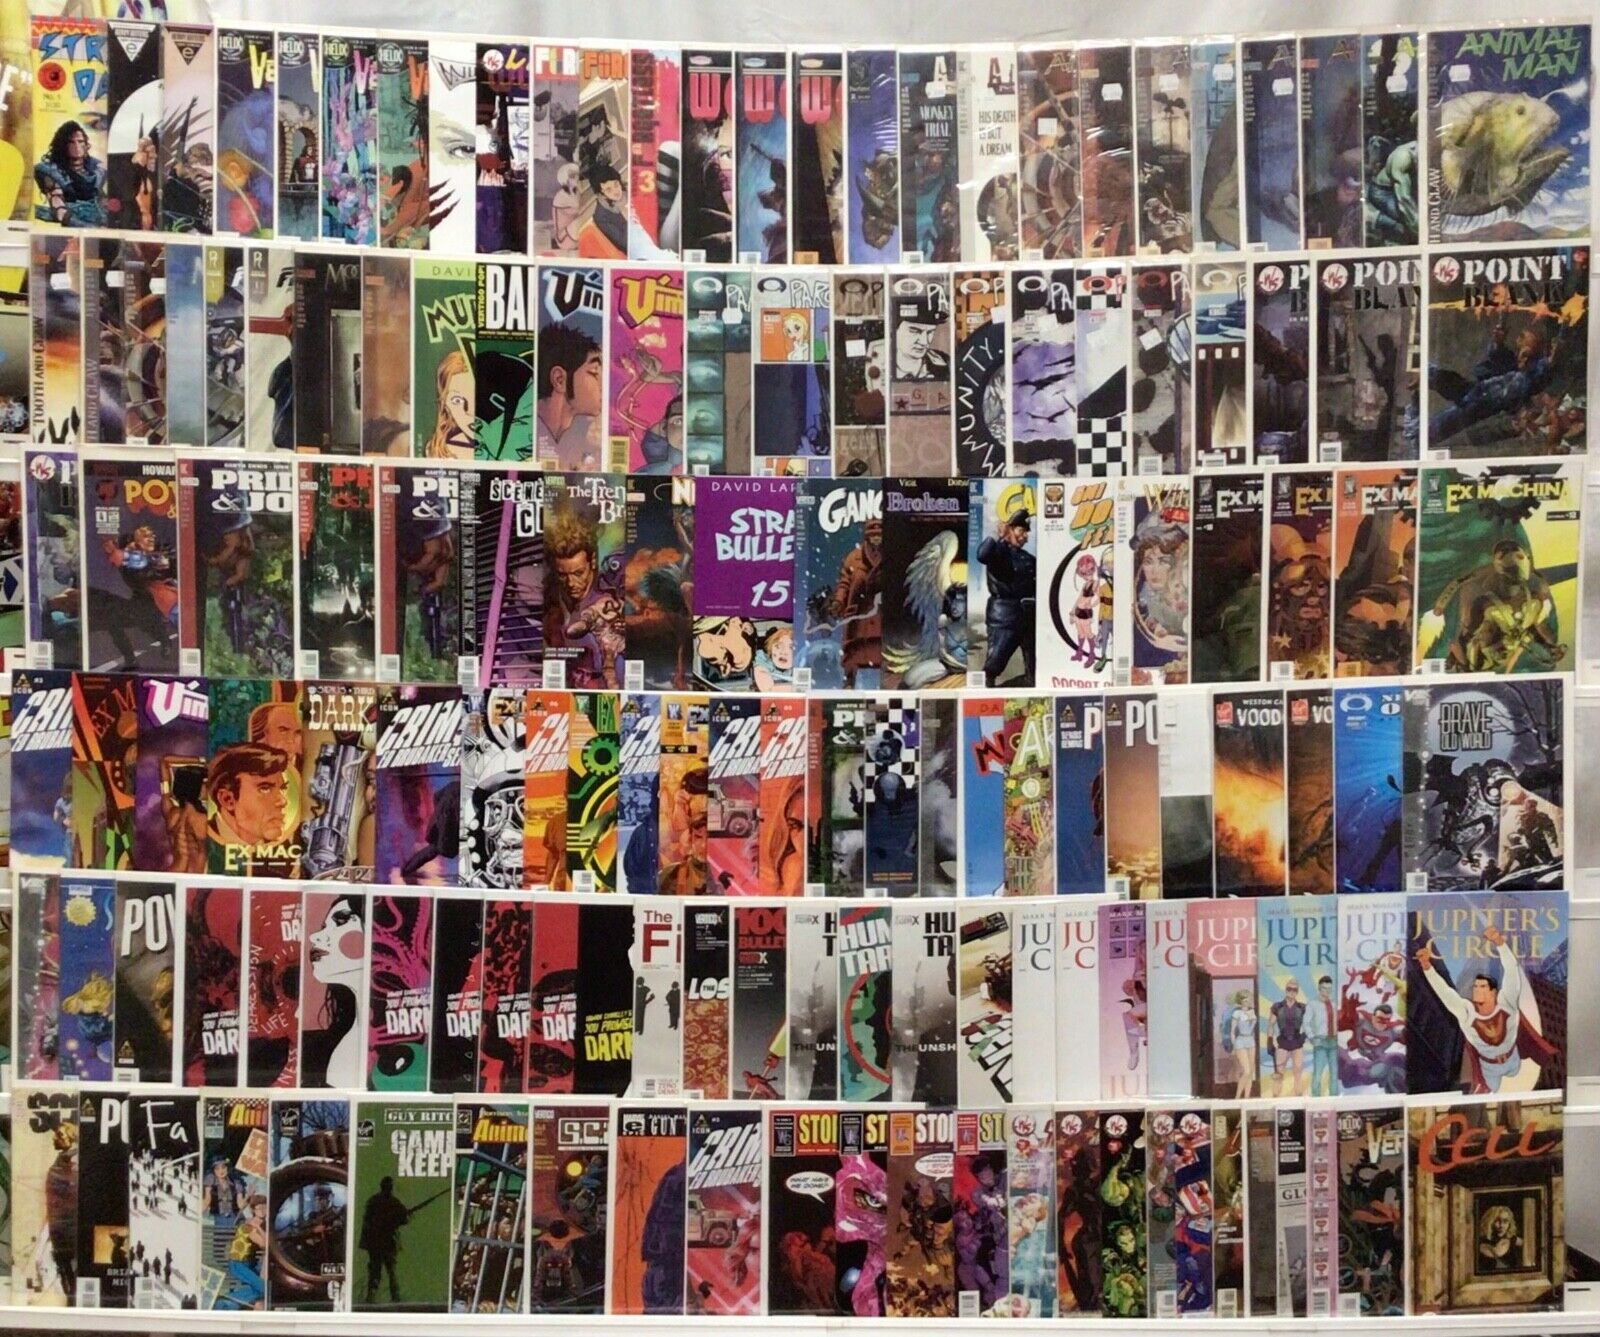 Unique Mature Comic Books Lot of 125+ Comics - Ex Machina, Powers, Jupiter’s